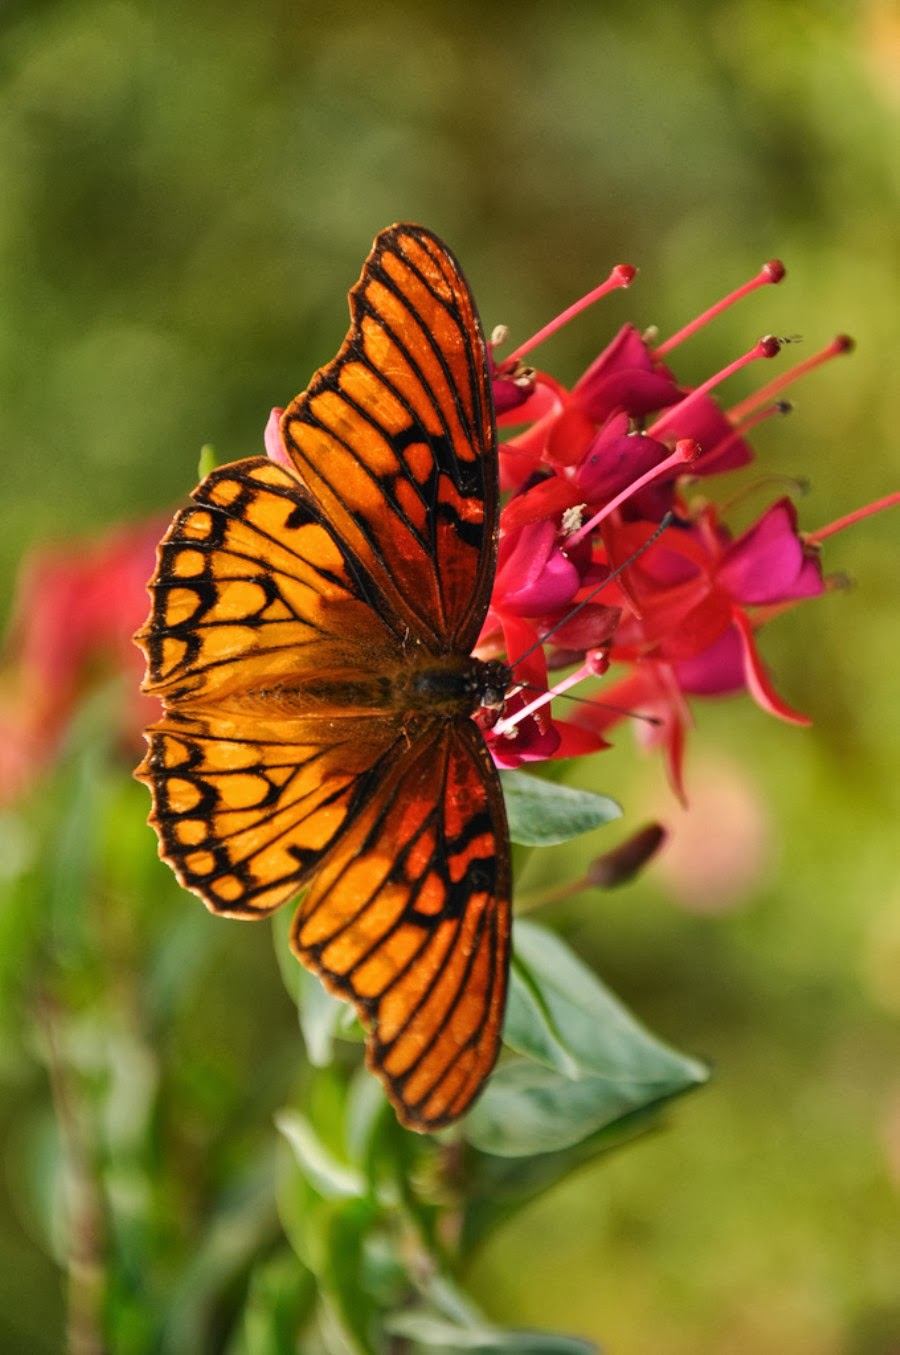 bellissimi fiori sfondi per cellulari,falene e farfalle,la farfalla,insetto,invertebrato,farfalla dai piedi a pennello